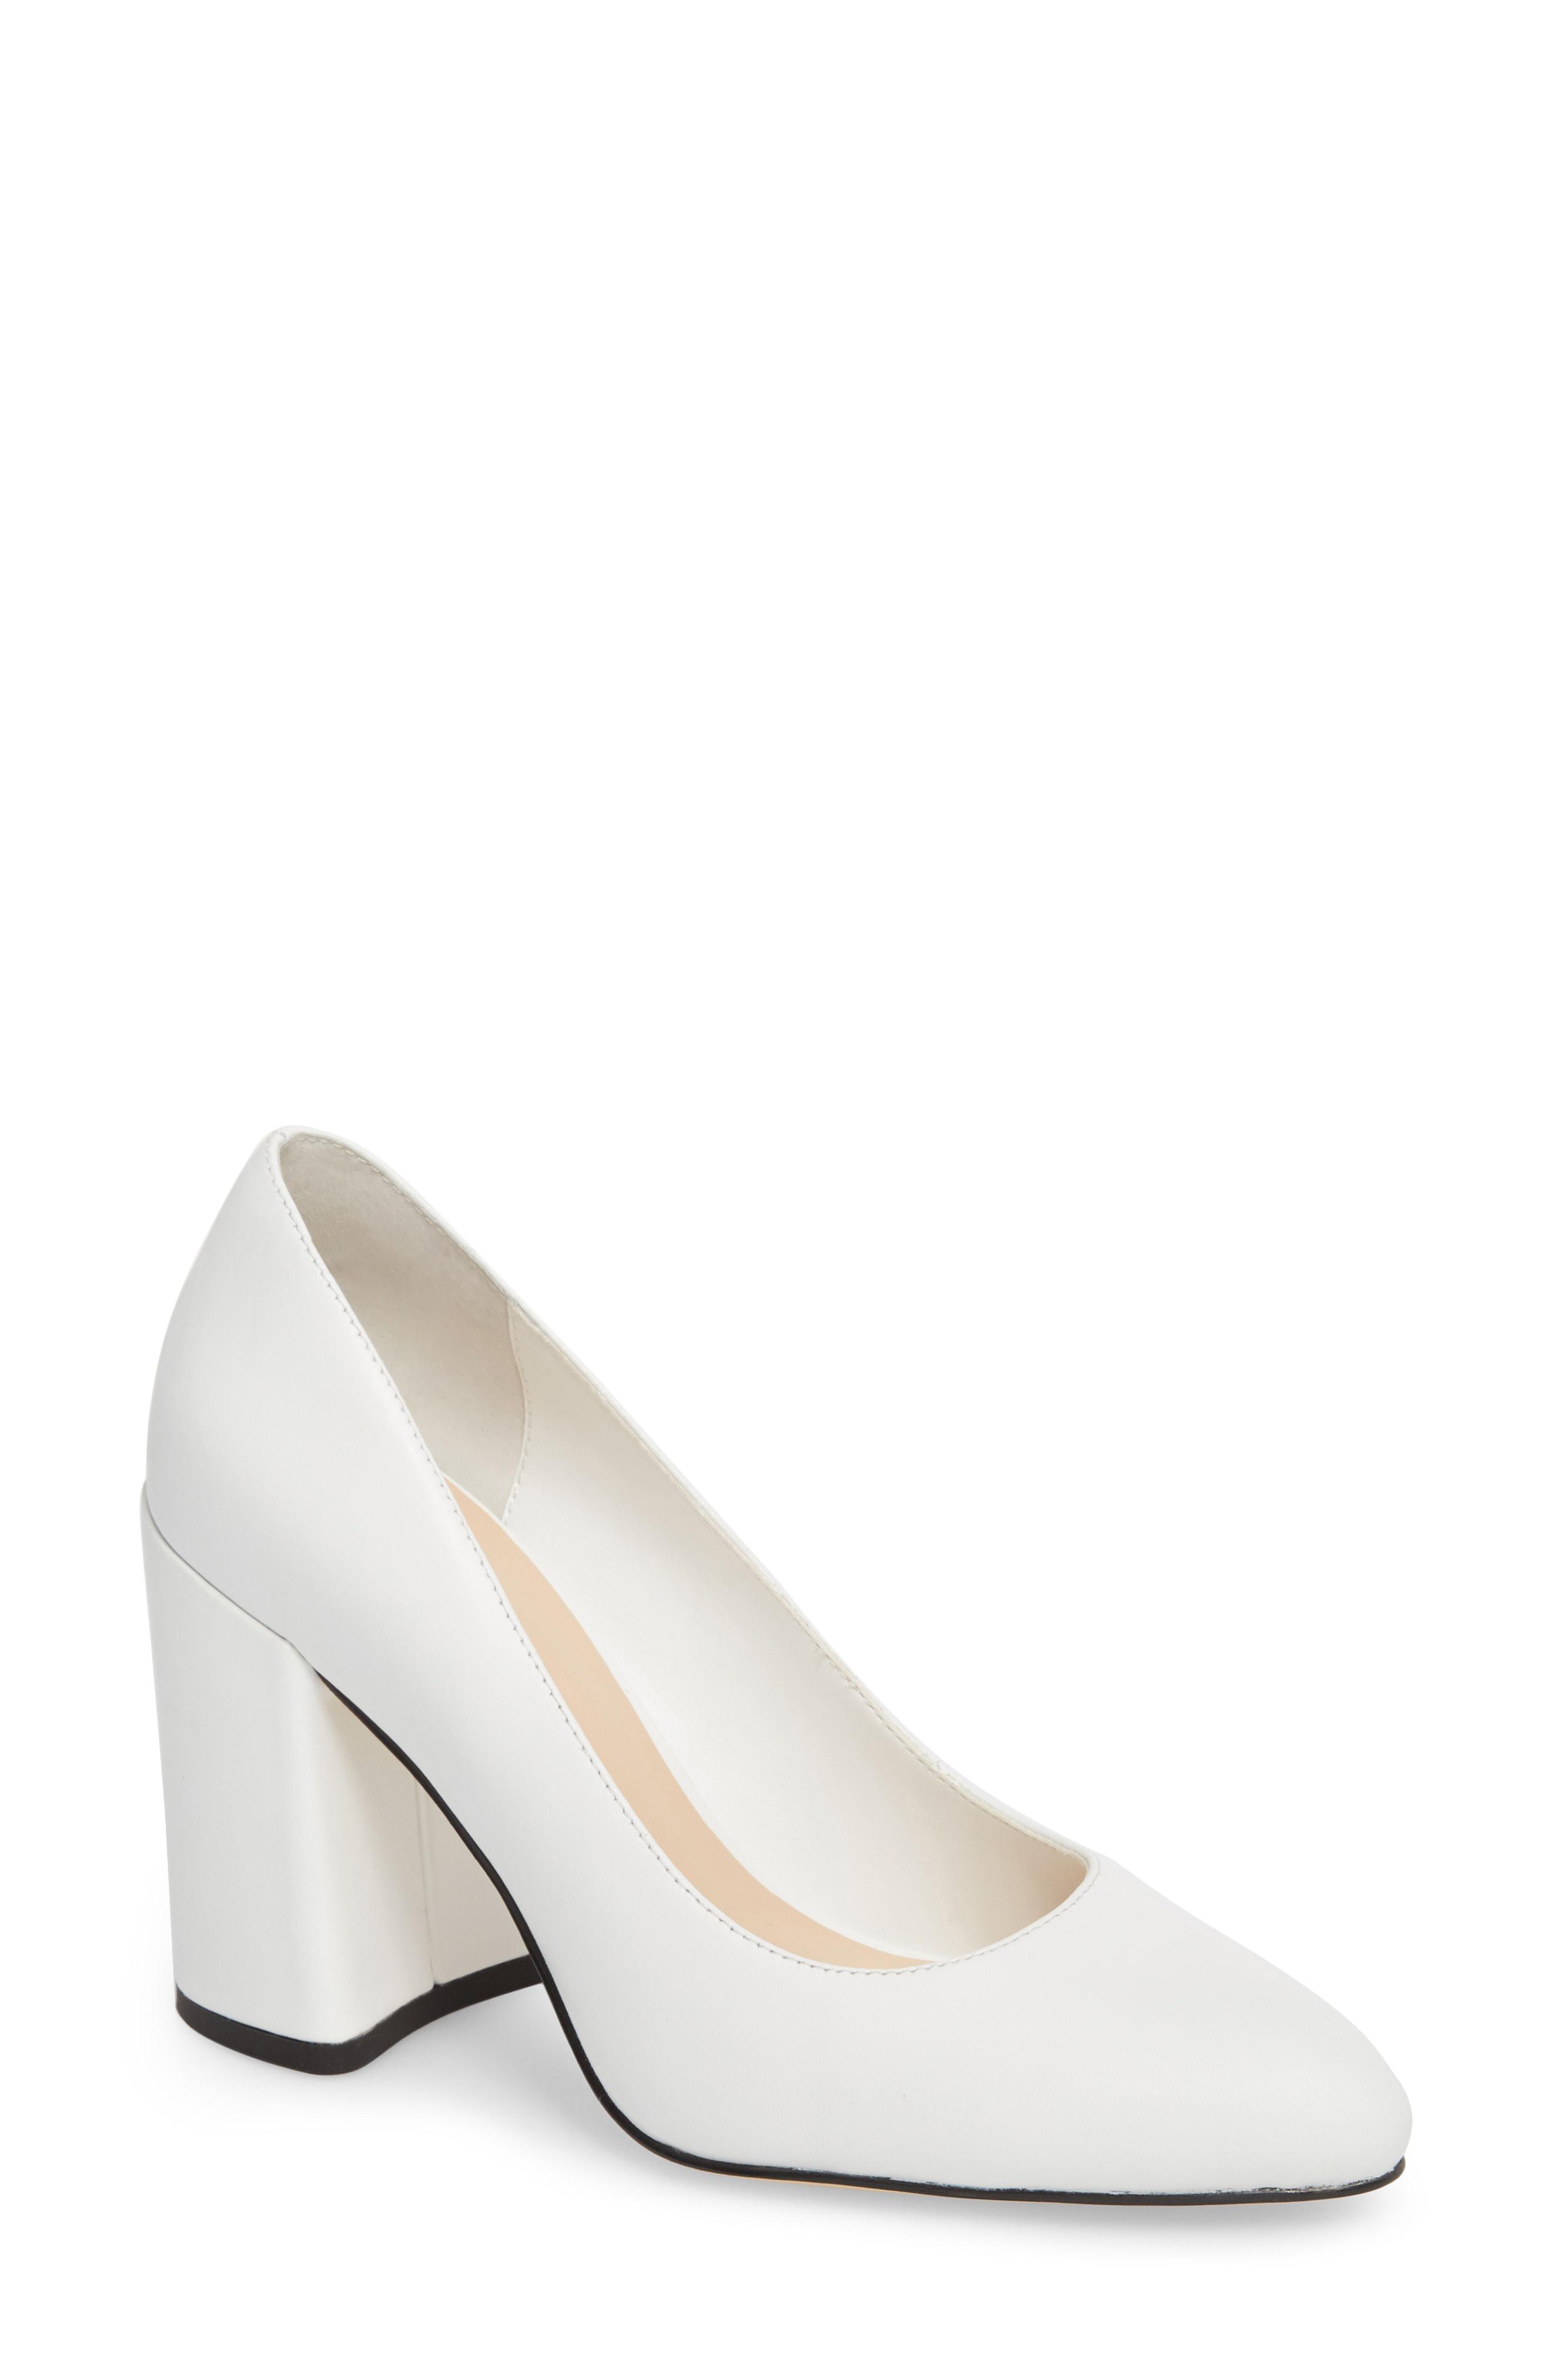 white heels block heel